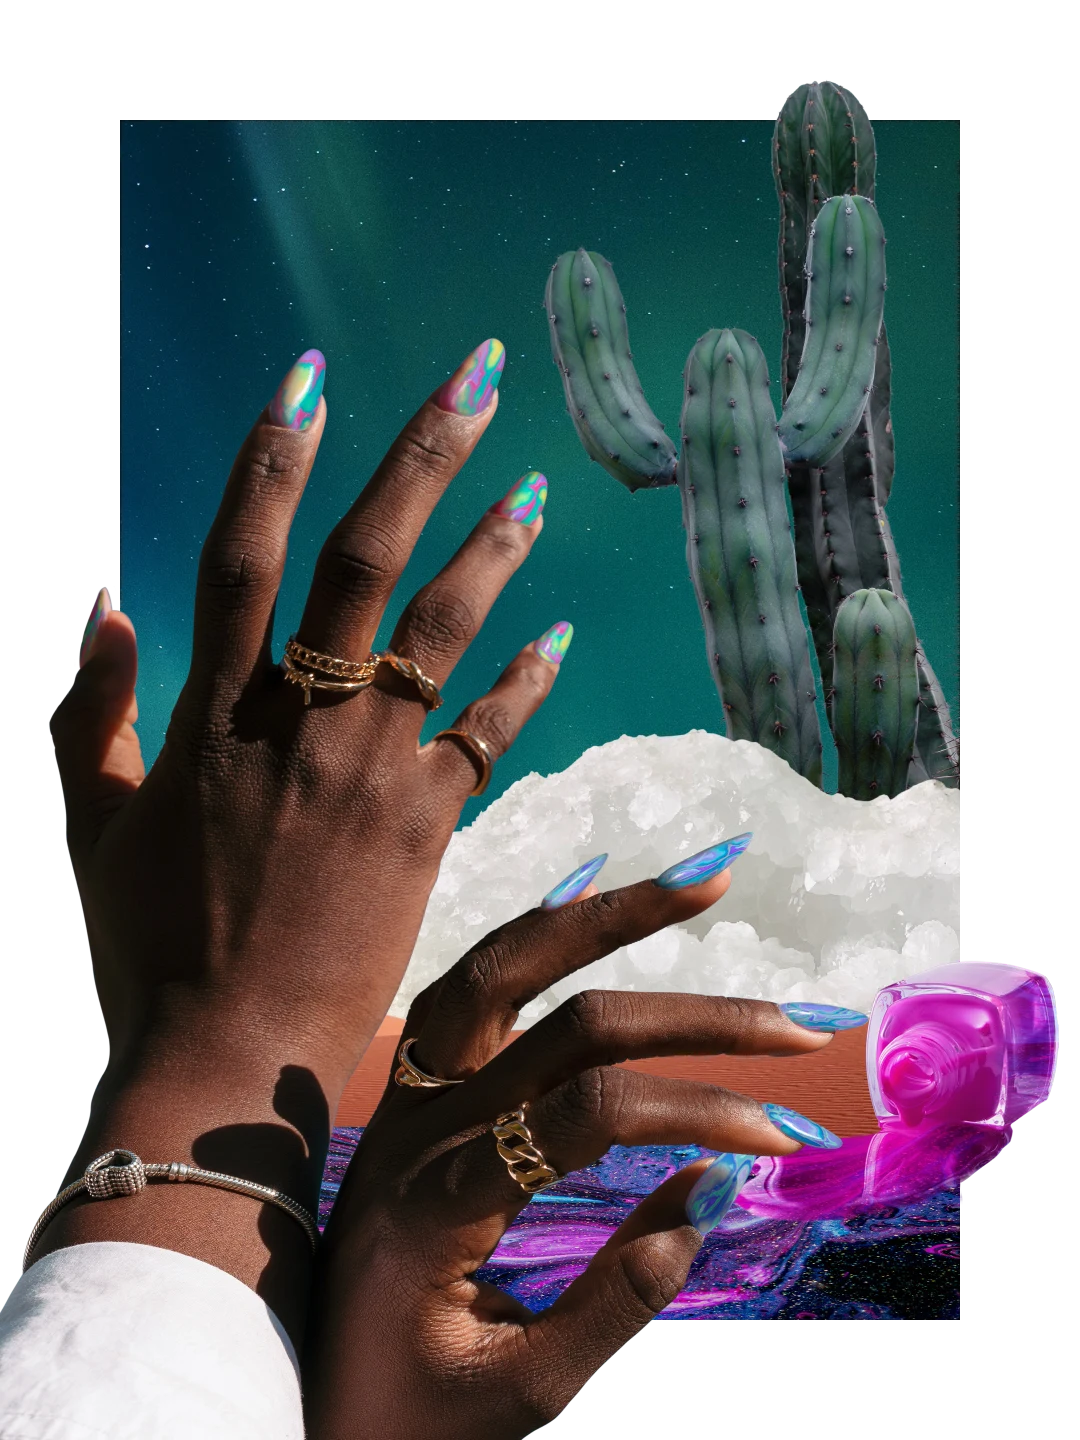 Collage di immagini relative alla nail art. A destra, da una boccetta esce uno smalto blu, rosa e viola. A sinistra, le mani di una donna nera con le unghie di diversi colori. In alto a destra, un grande cactus, con sotto dei cristalli di sale.
